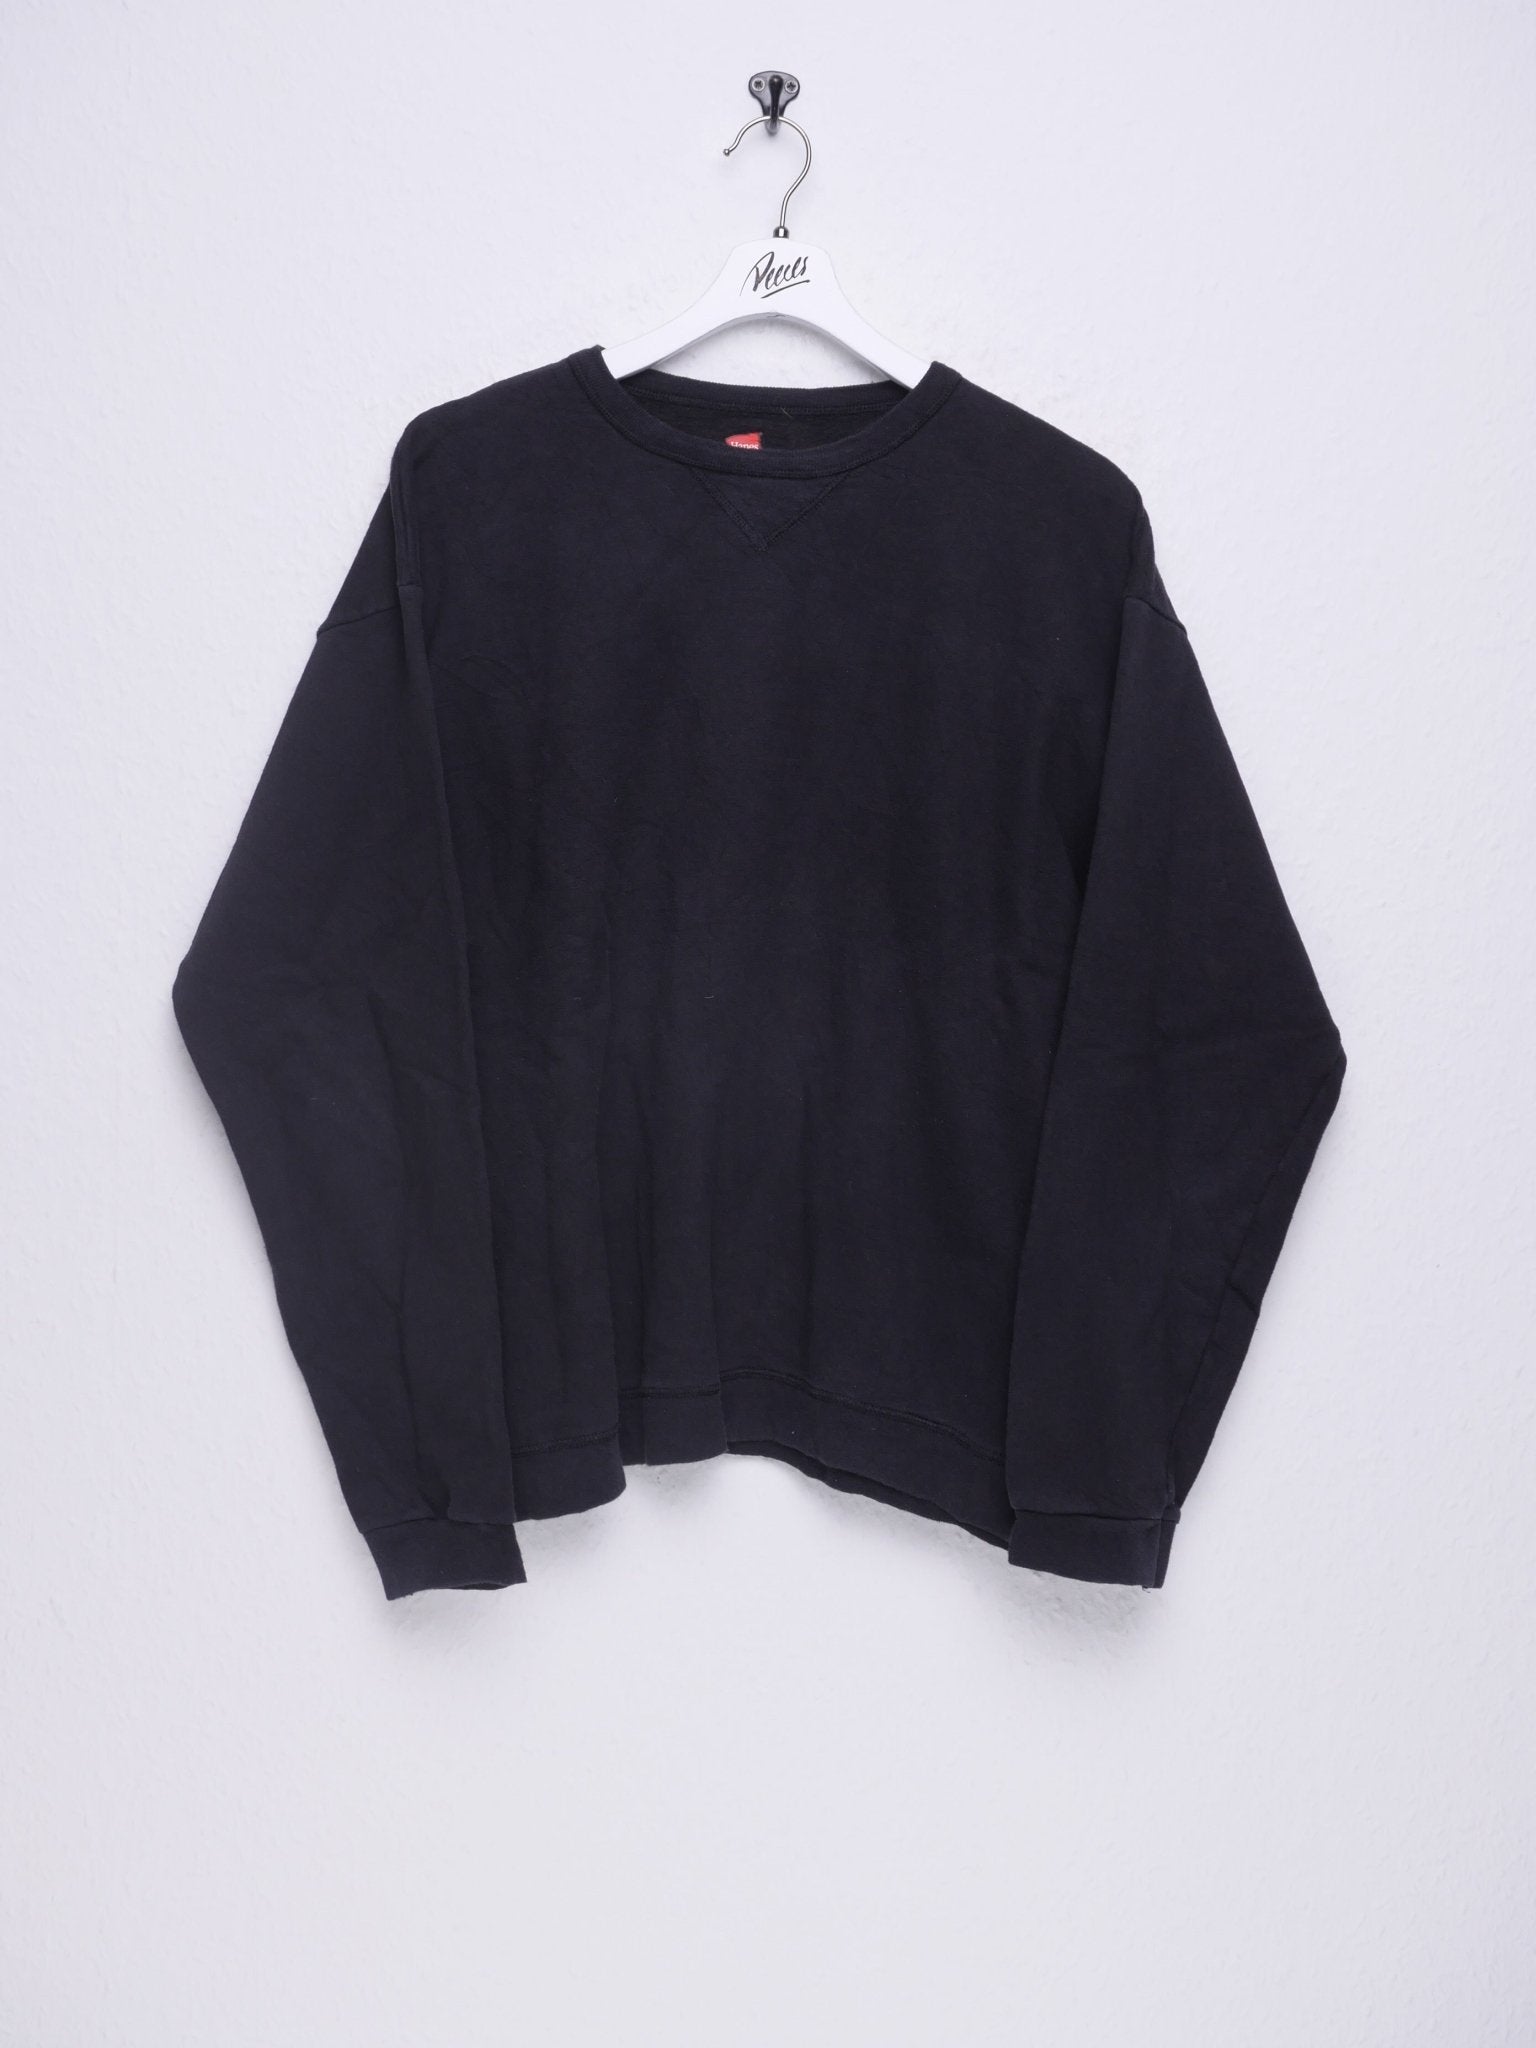 Vintage basic black Sweater - Peeces